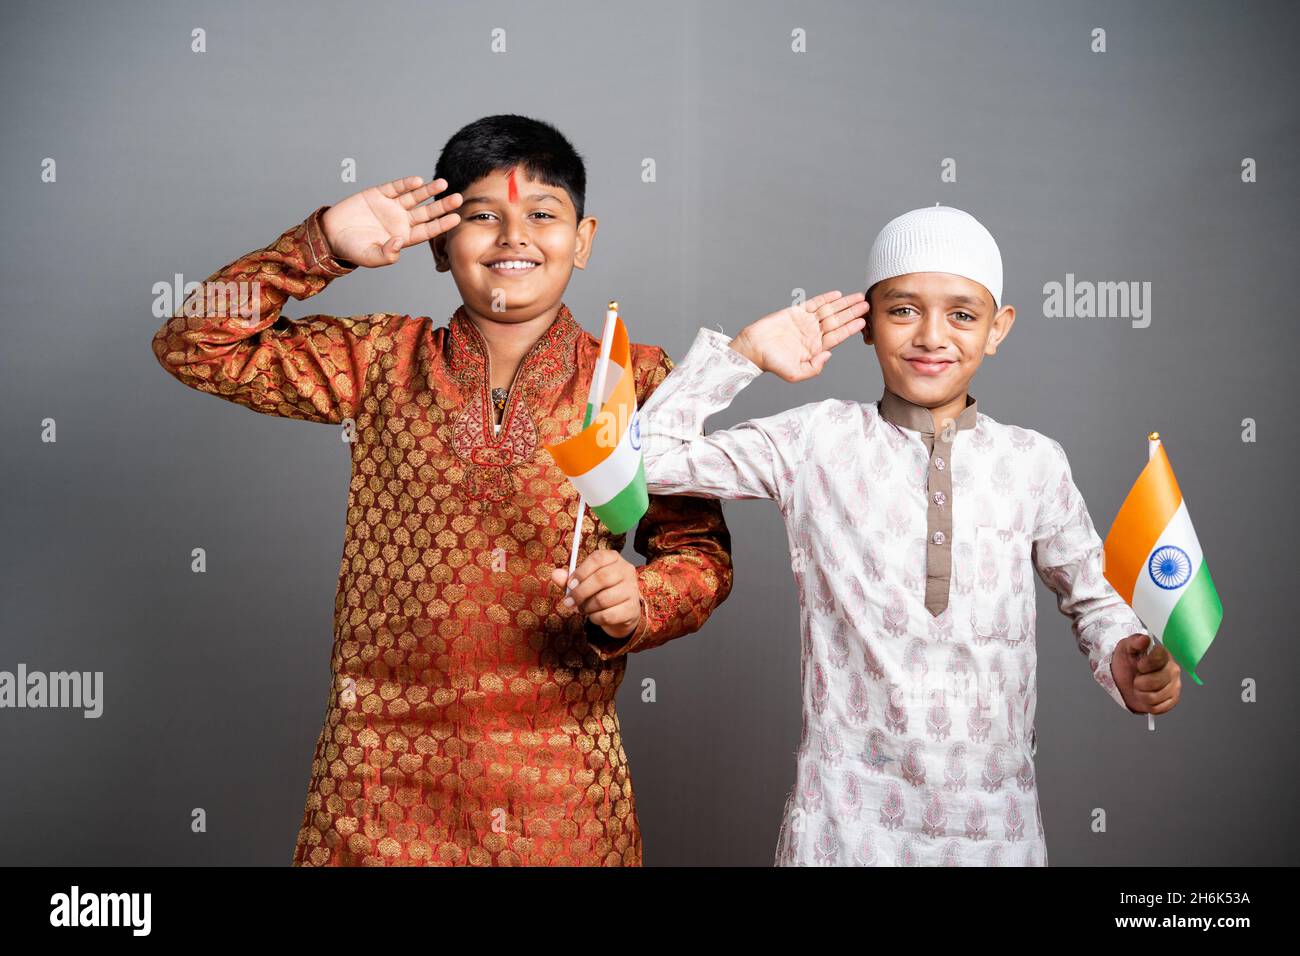 Enfants musulmans hindous saluant en tenant le drapeau indien sur fond gris - concept d'enfants célébrant la République indienne ou jour de l'indépendance, religieux Banque D'Images